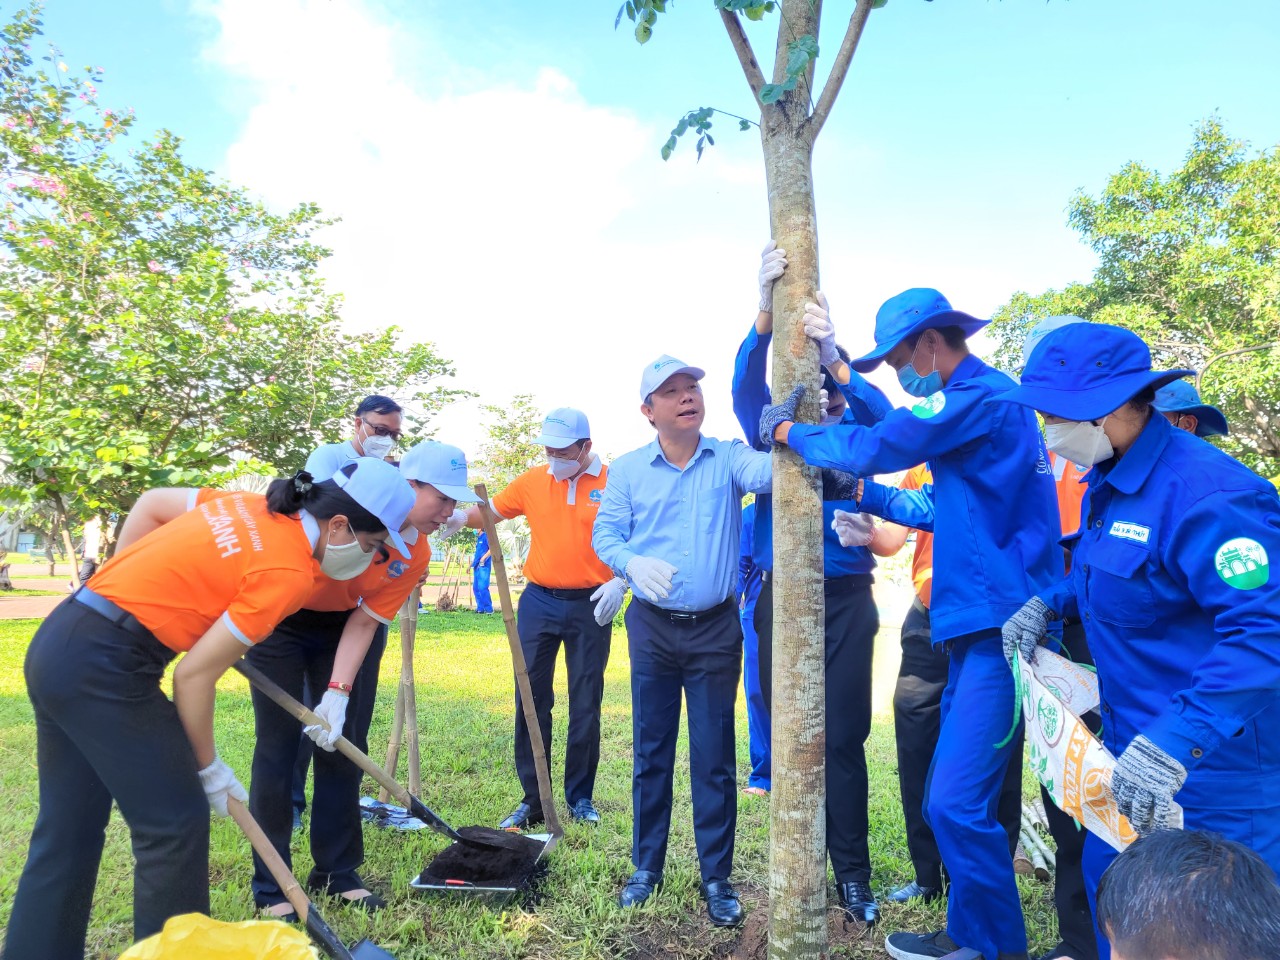 Phó Chủ tịch UBND TP.HCM (áo xanh) cùng lãnh đạo Hội LHPN TP.HCM và lãnh đạo Q. Bình Thạnh trồng những cây xanh đầu tiên để vận động các tầng lớp nhân dân cùng tham gia trồng cây để tăng cường mảng xanh đô thị 